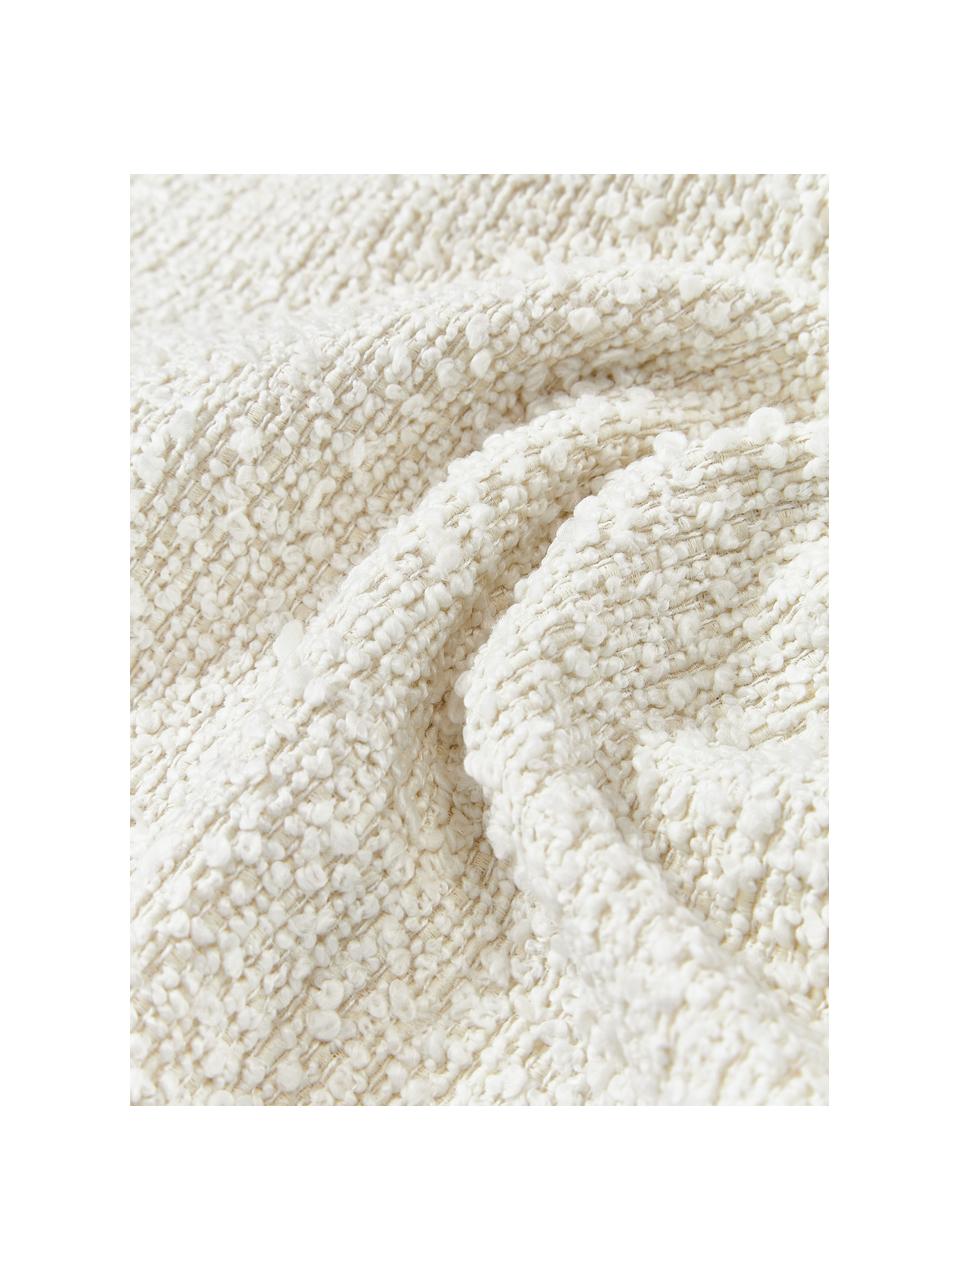 Housse de coussin en tissu bouclé Bellamie, Tissu bouclé (95 % polyester, 5 % polyacrylique)

Le bouclé est un matériau qui se caractérise par sa structure incurvée irrégulière. La surface caractéristique est créée par des boucles tissées de fils de différents types, qui confèrent au tissu une structure unique. La structure bouclée a un effet à la fois isolant et moelleux, ce qui rend le tissu particulièrement douillet, Bouclé blanc, larg. 60 x long. 60 cm